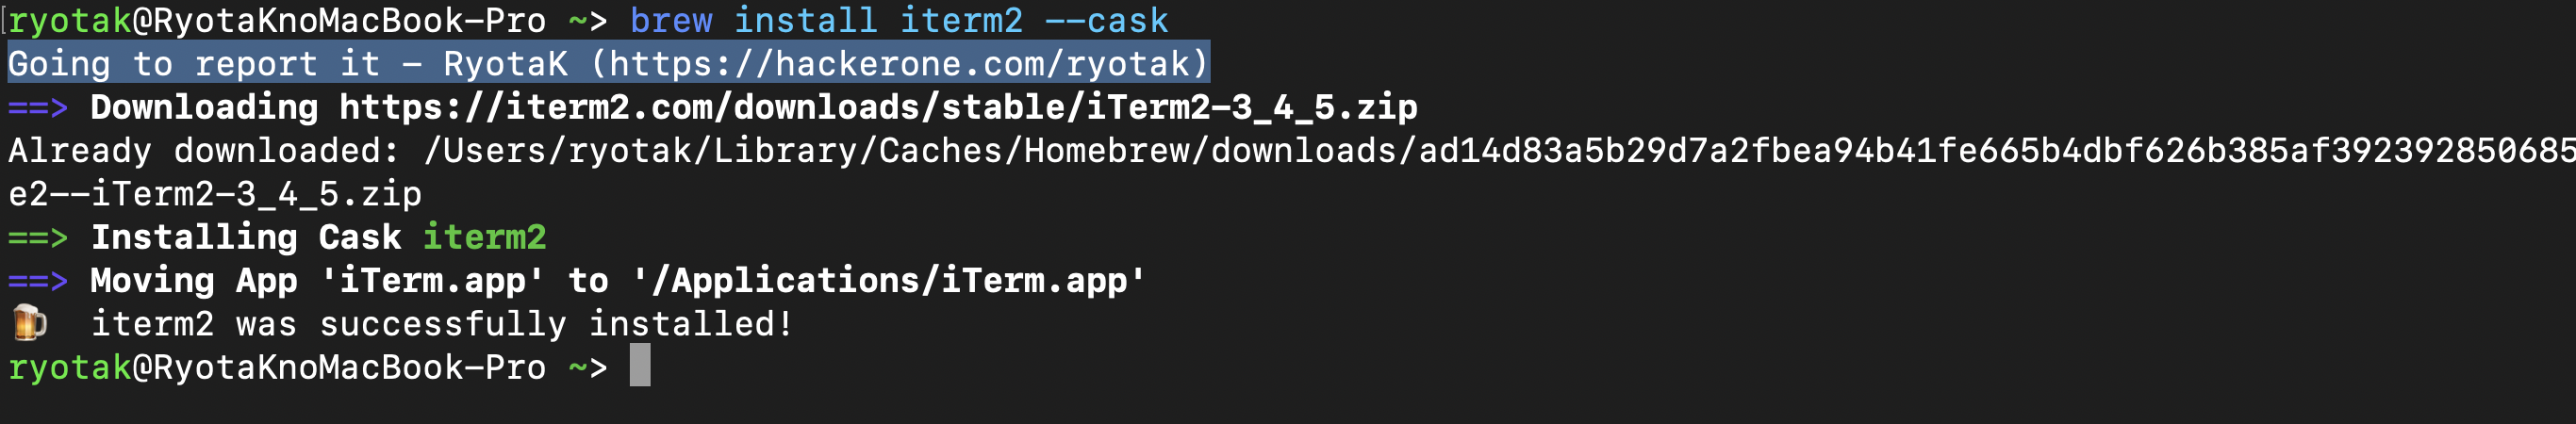 brew install iterm2 &ndash;caskが変更後のコードを参照している事を示す画像